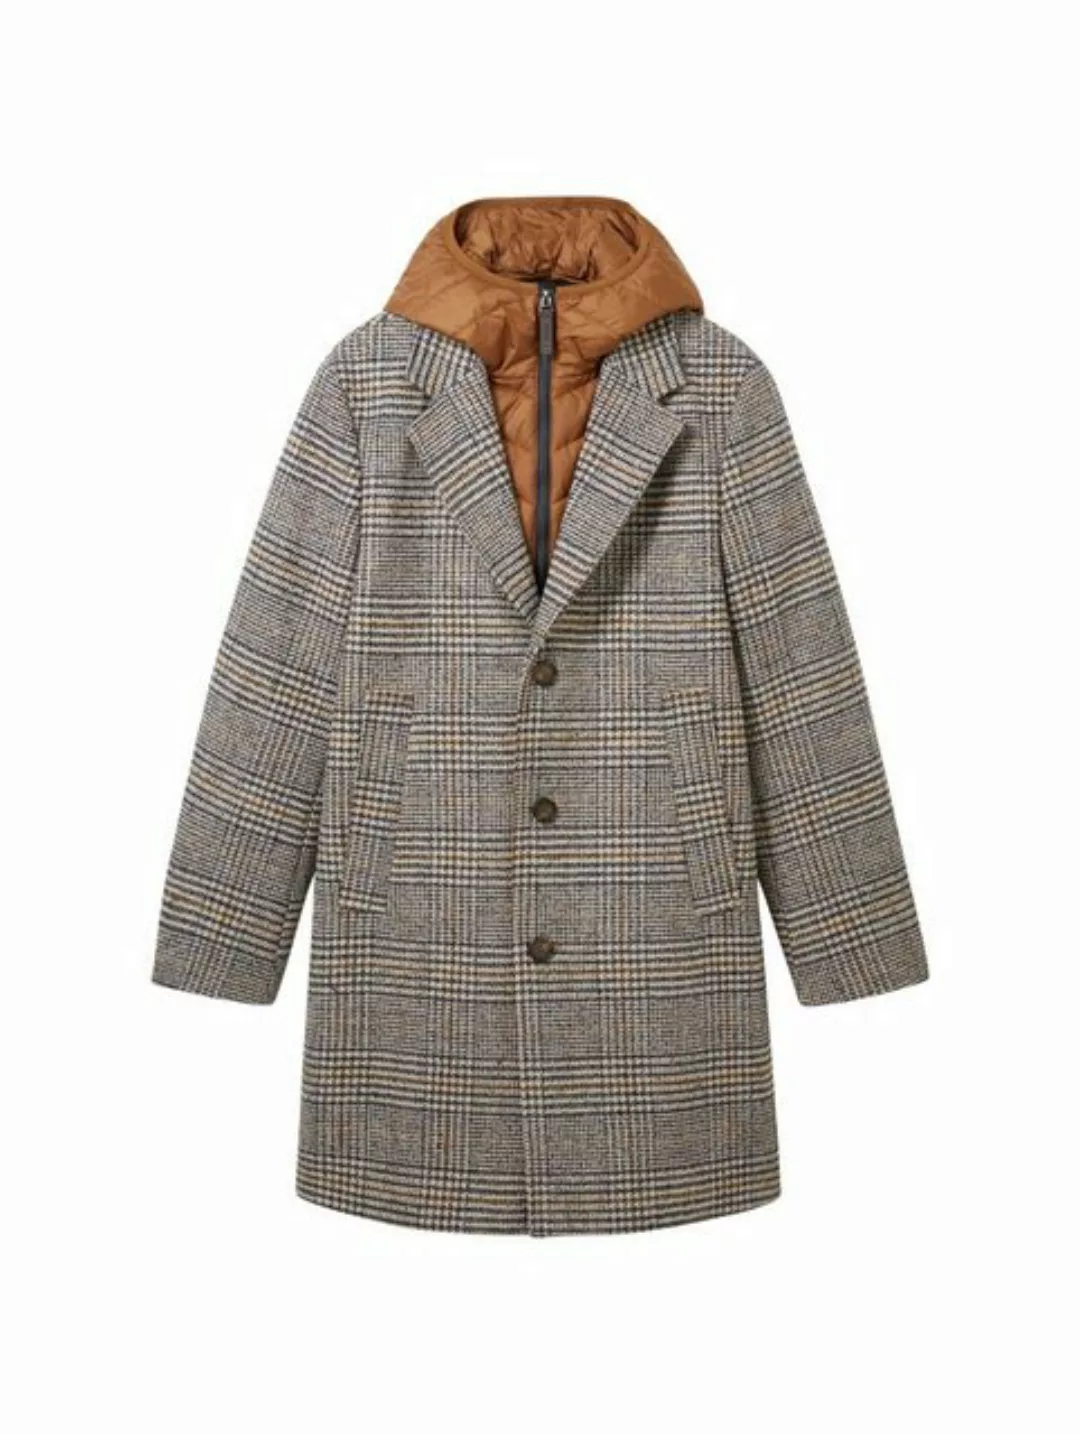 TOM TAILOR Wollmantel wool coat 2 in 1 wit günstig online kaufen